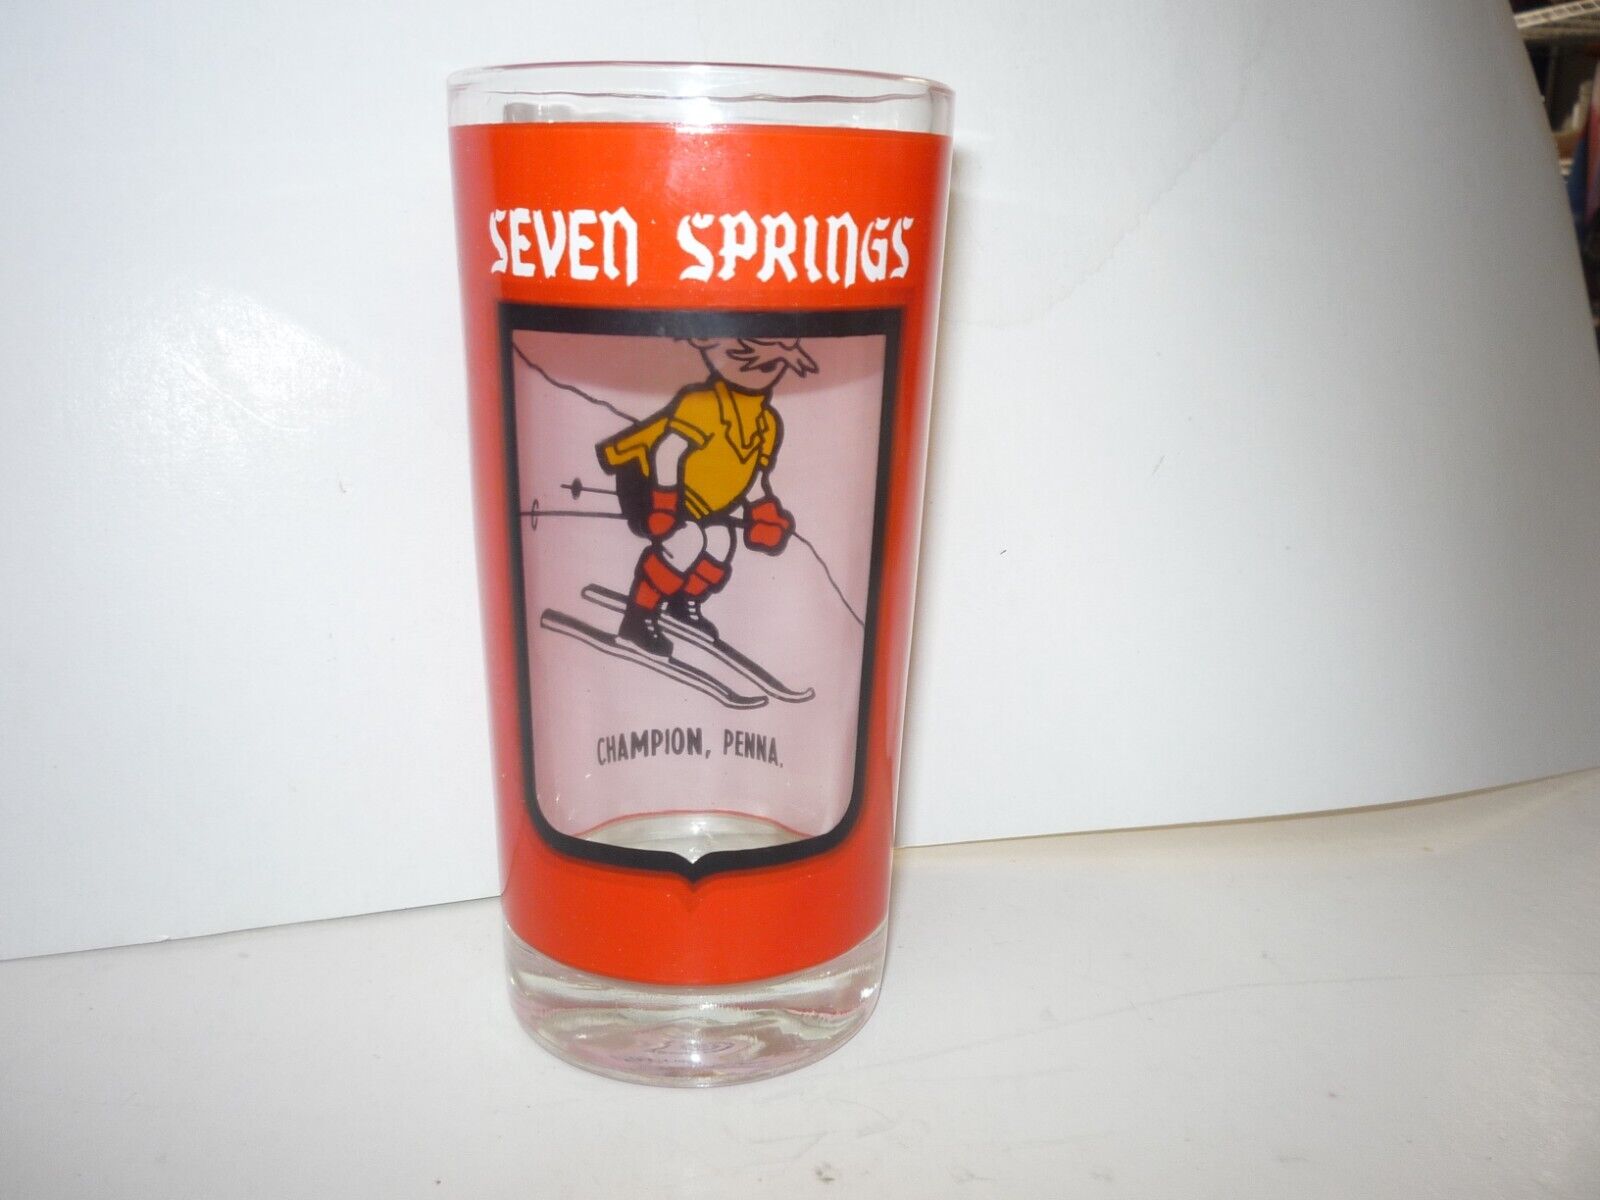  Seven Springs Mountain  Resort Souvenir  Glass - Champion - Somerset Pa.